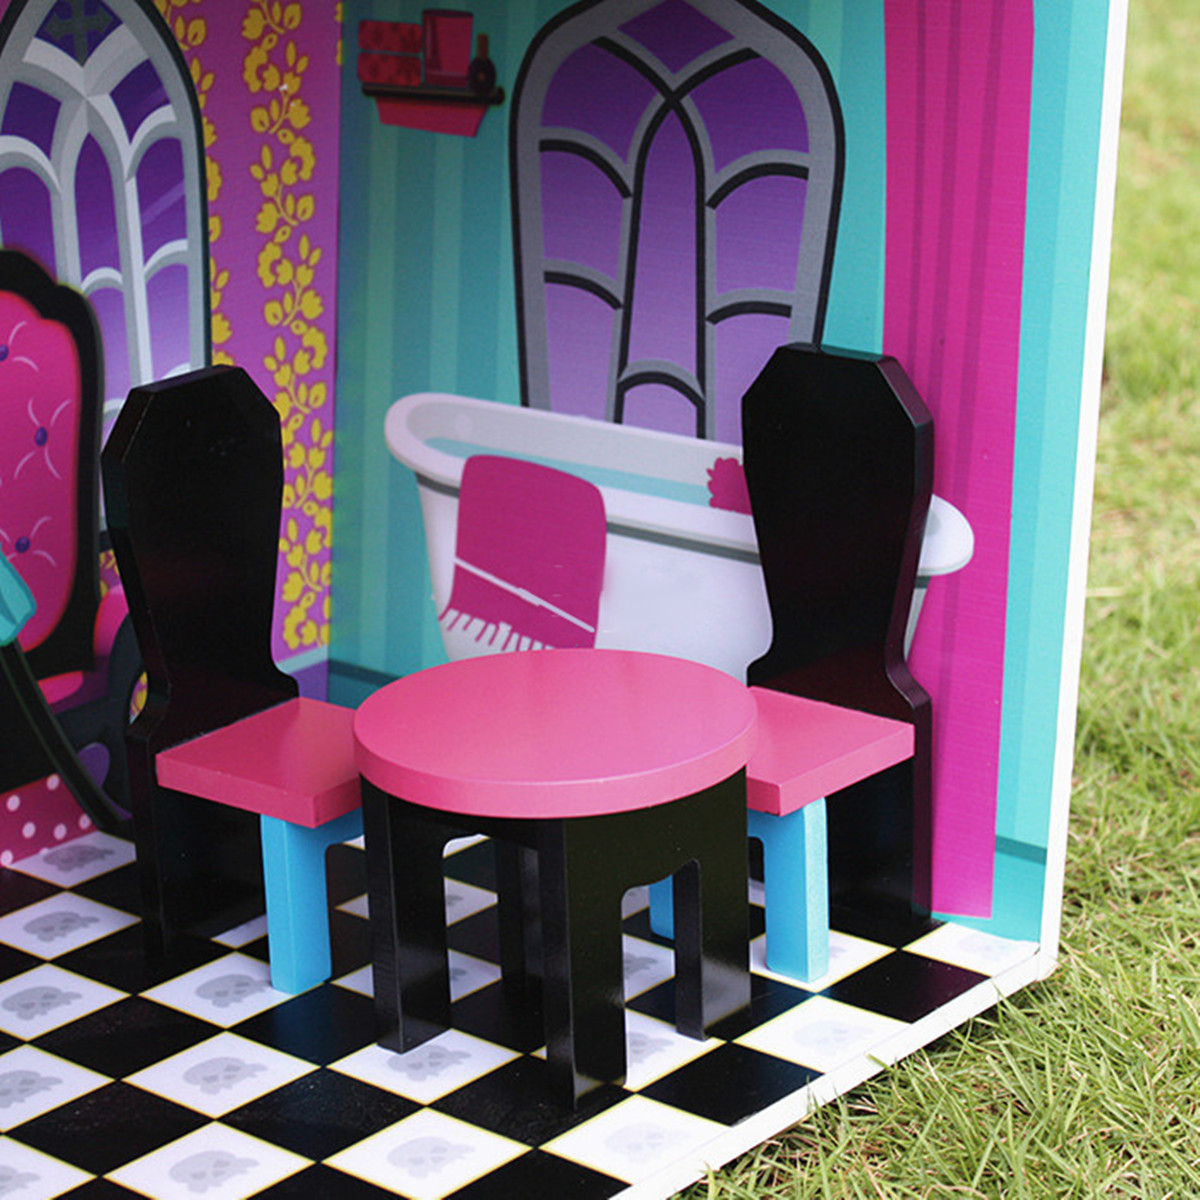 Purple-Villa-DIY-Wood-Big-Doll-House-Dream-Light-Miniature-Furniture-Kits-Big-Kid-Gift-1467953-3